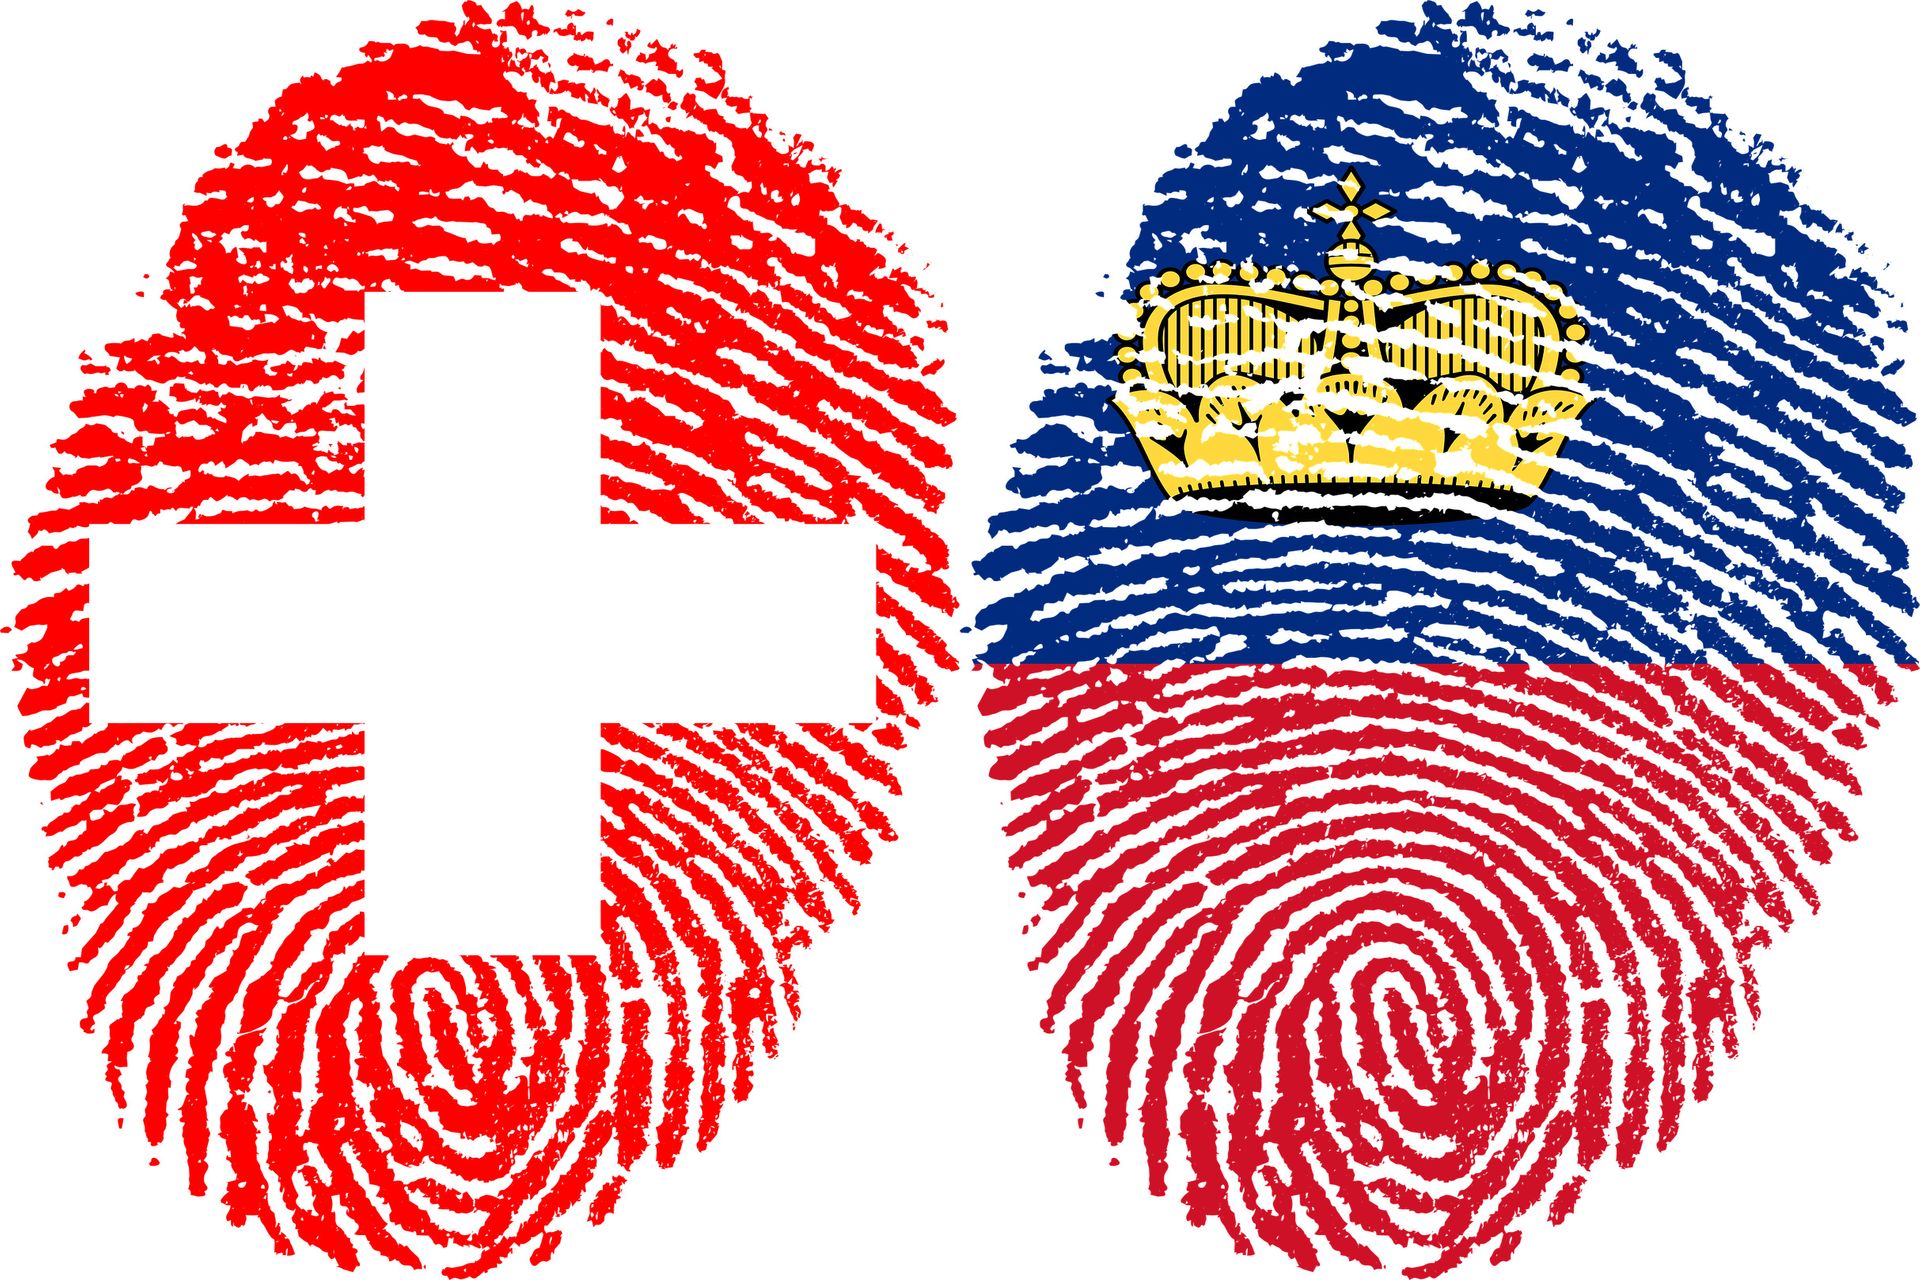 Fingeravtryck som föreställer Schweiziska edsförbundets och Furstendömet Liechtensteins flaggor